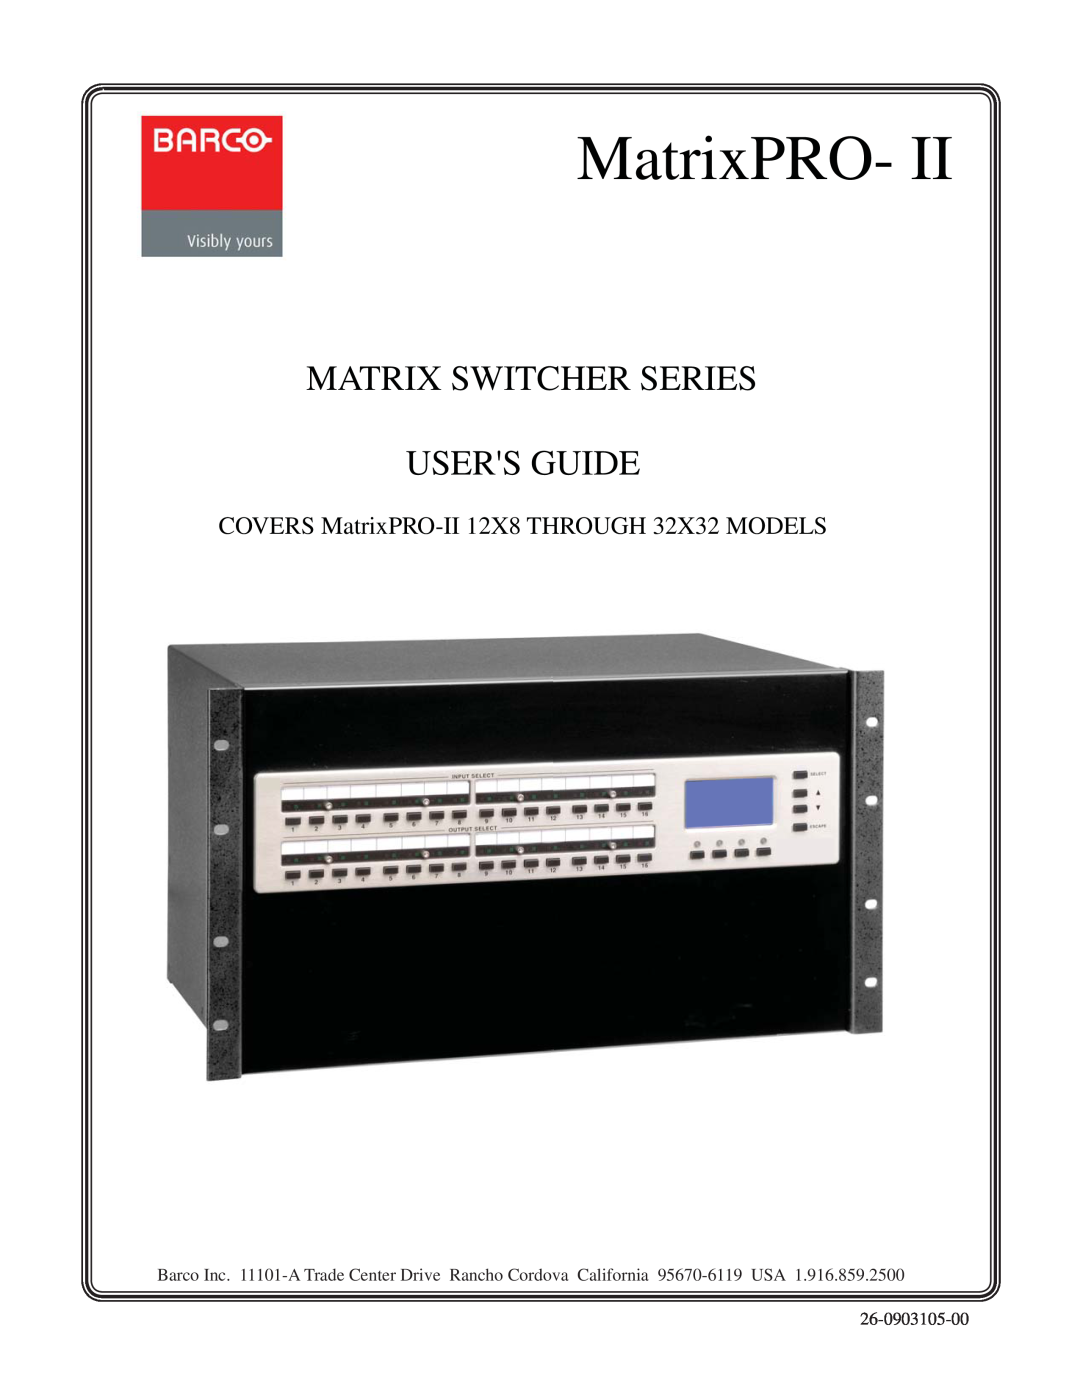 Barco manual Matrix Switcher Series Users Guide, COVERS MatrixPRO-II 12X8 THROUGH 32X32 MODELS, 26-0903105-00 